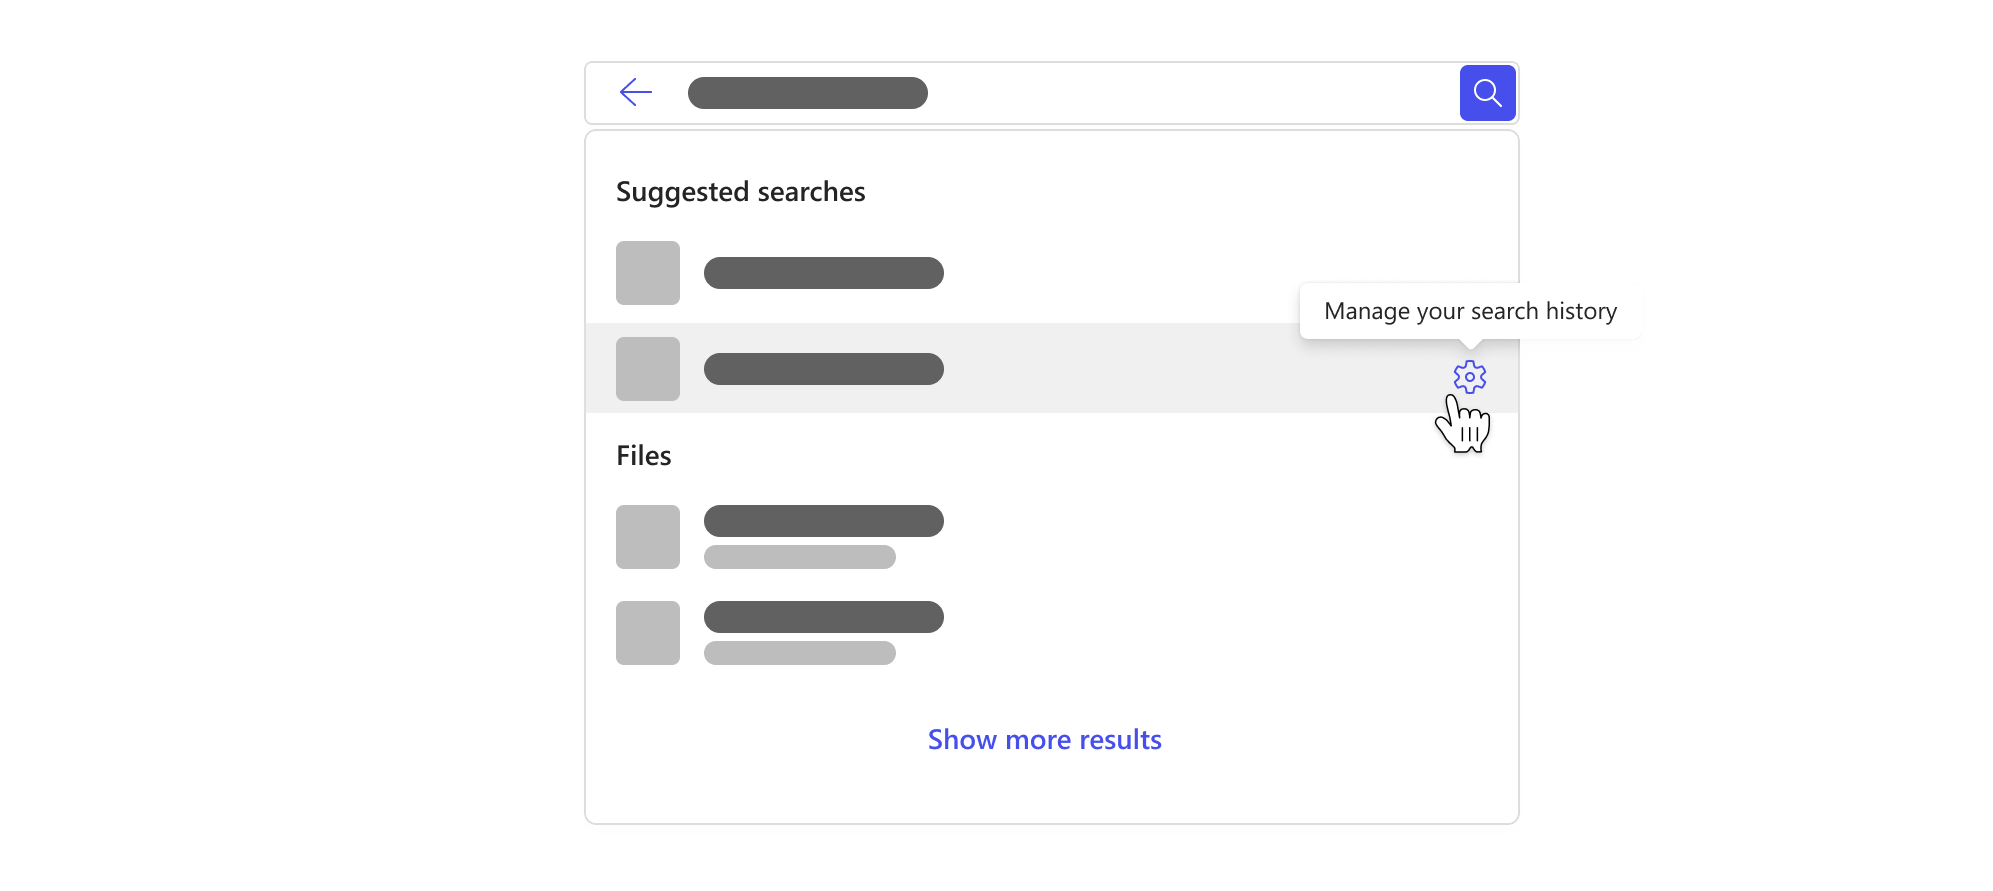 搜尋方塊，下拉式清單會根據您的搜尋歷程記錄醒目提示建議的搜尋，以及管理搜尋歷程記錄的按鈕。